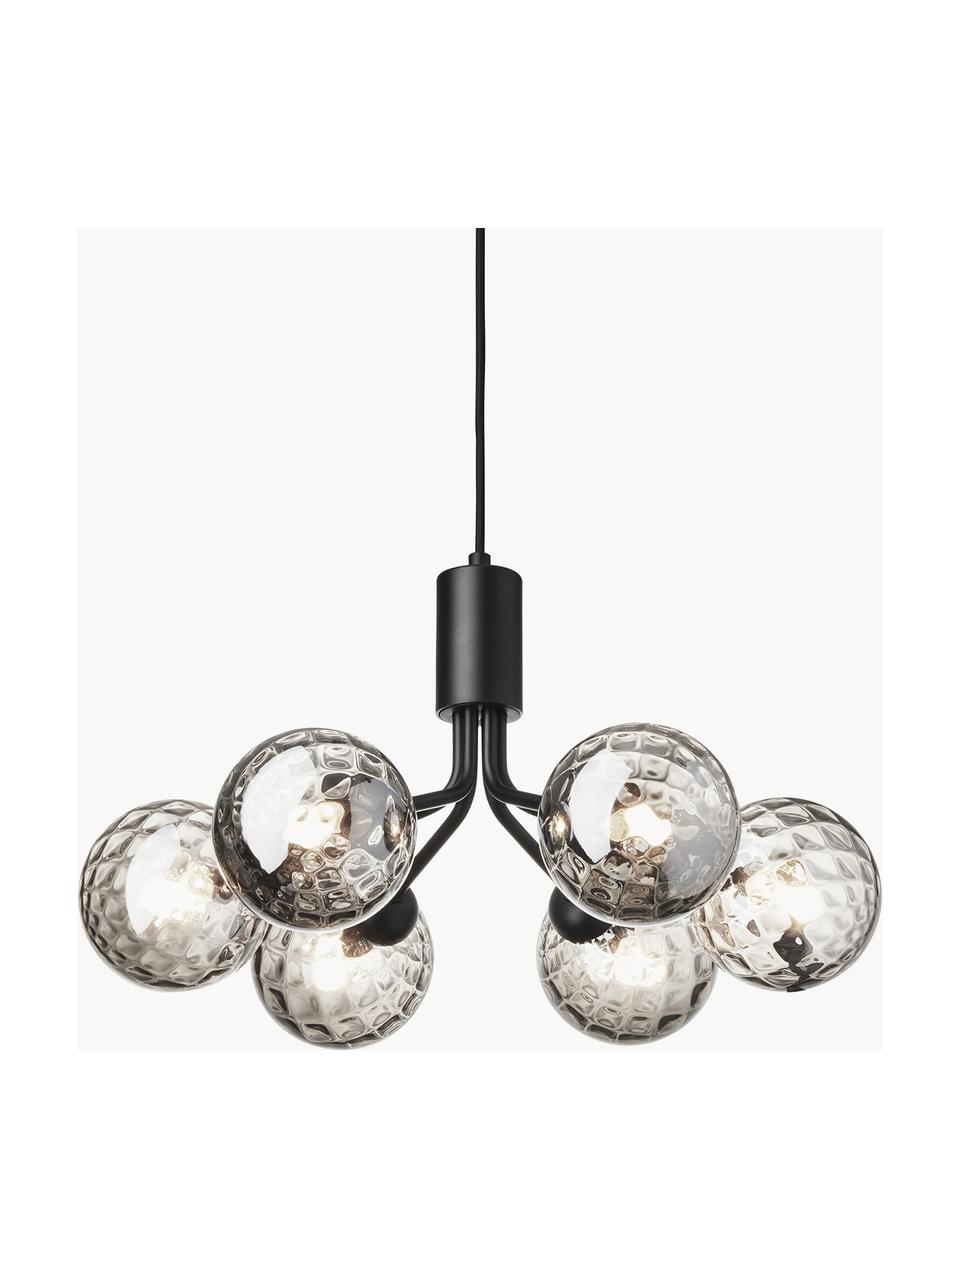 Hanglamp met glazen bollen Apiales, Zwart, grijs, transparant, Ø 50 x H 26 cm